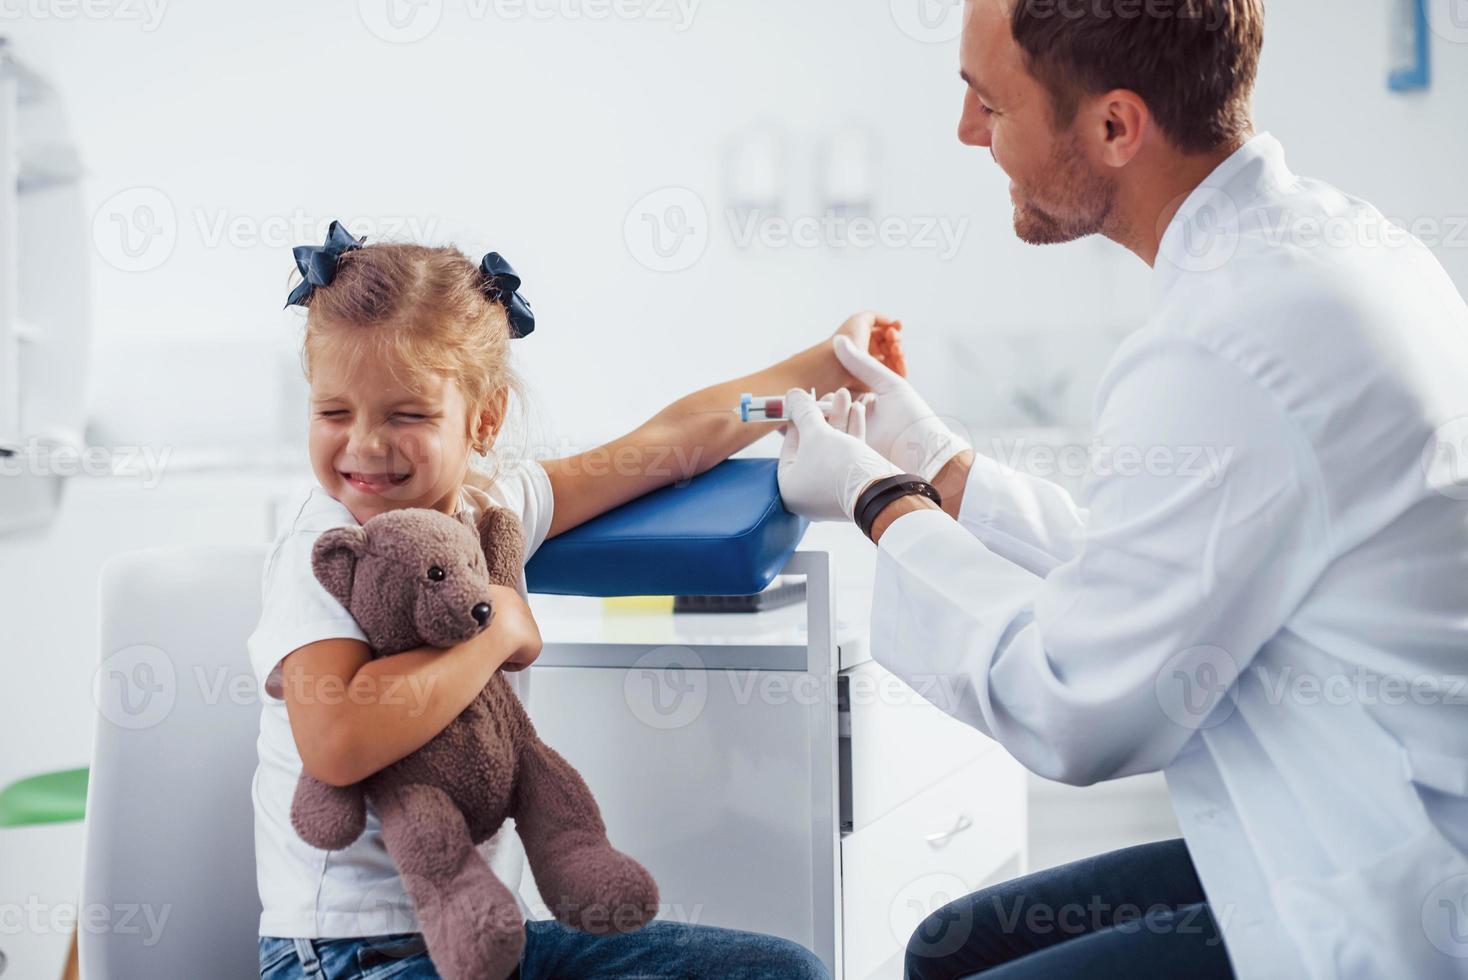 bloed bemonstering. weinig meisje met haar teddy beer is in de kliniek met dokter foto